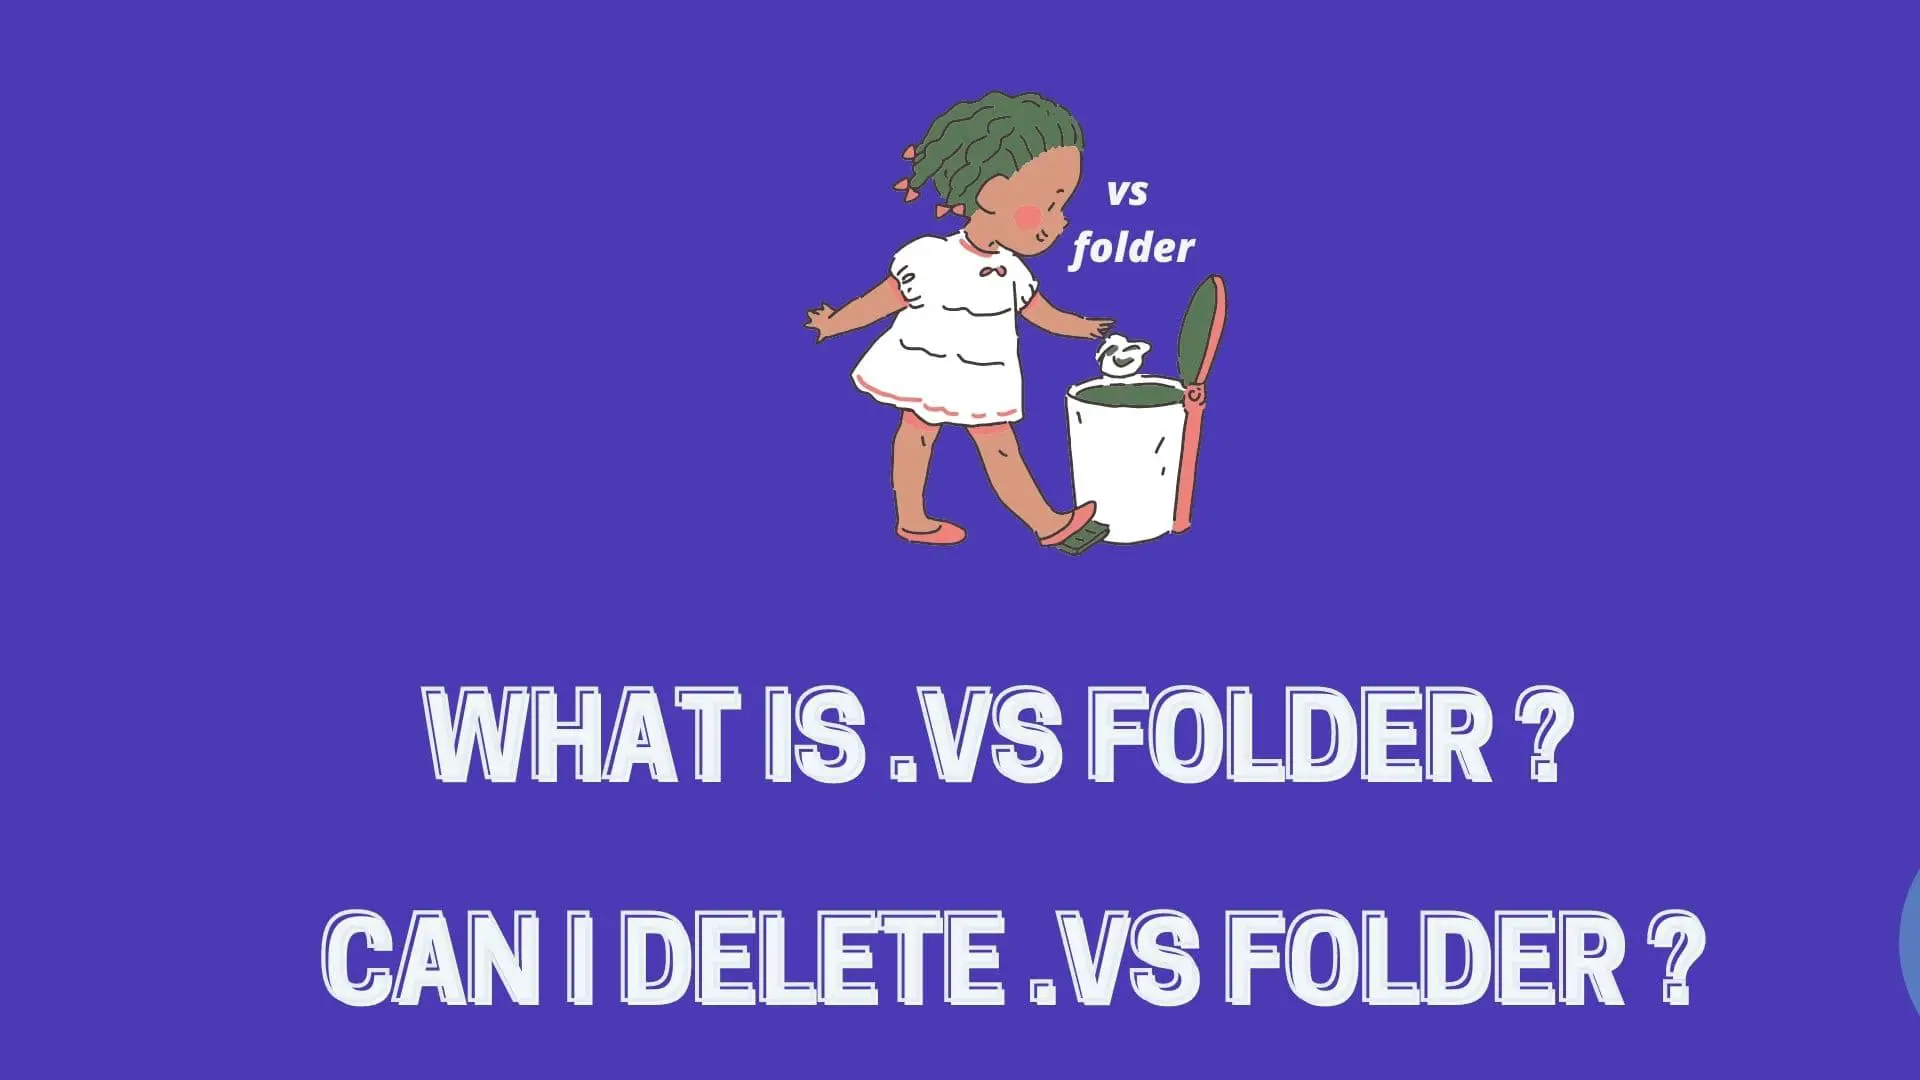 vs-folder-in-visual-studio-can-delete-it